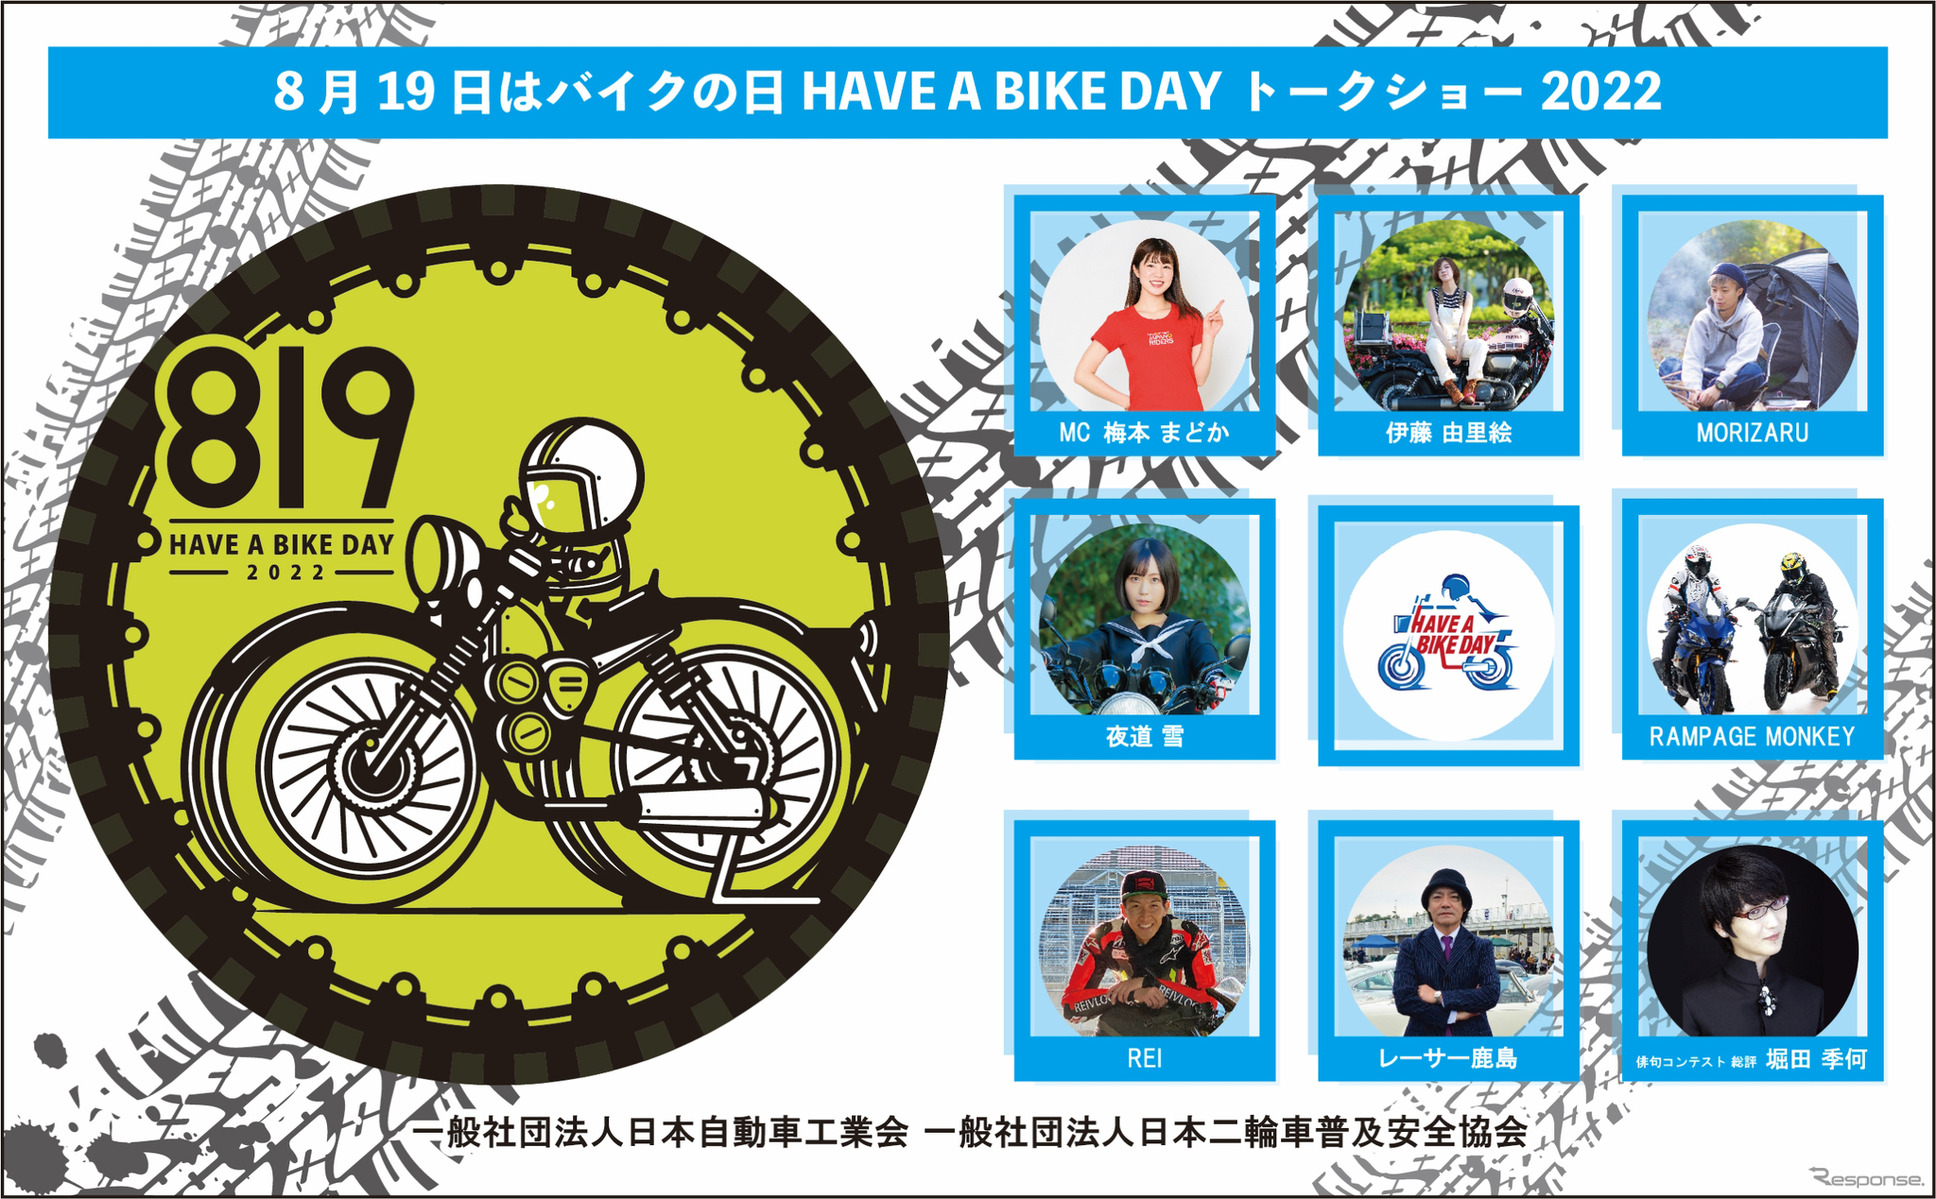 「8月19日はバイクの日 HAVE A BIKE DAY」を開催